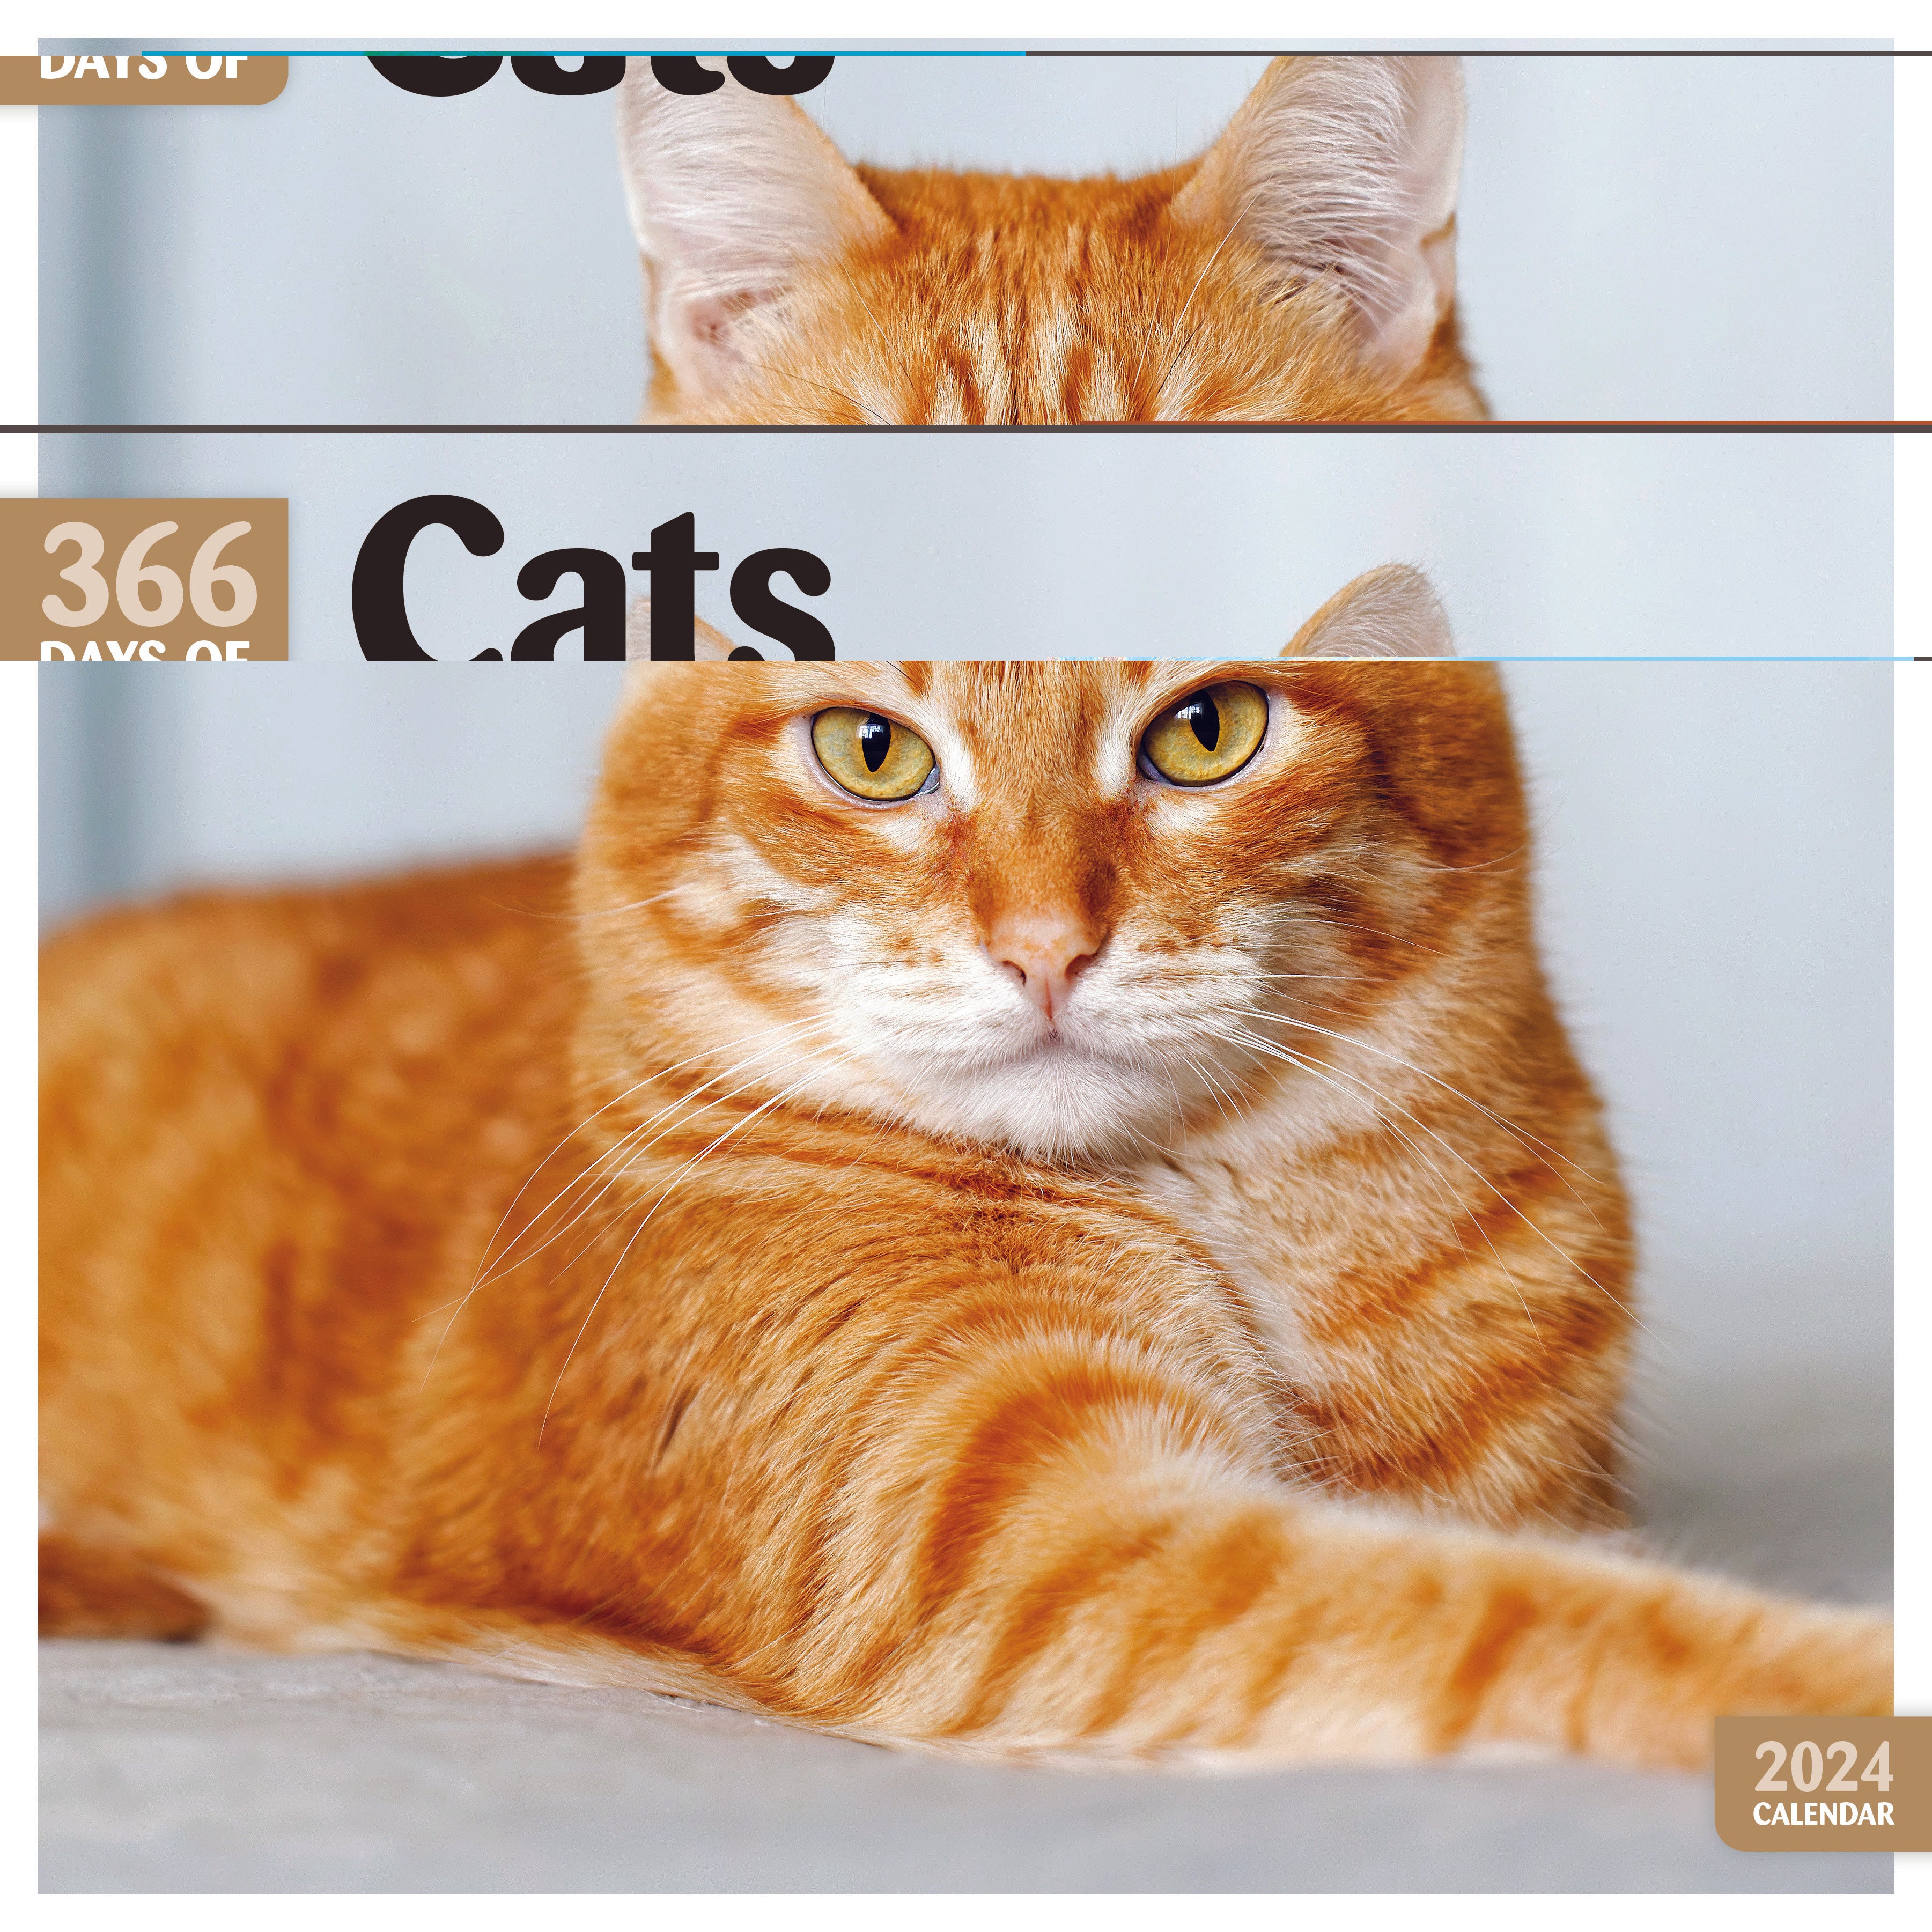 Cats Square Calendar 2024 – Redwings Horse Sanctuary